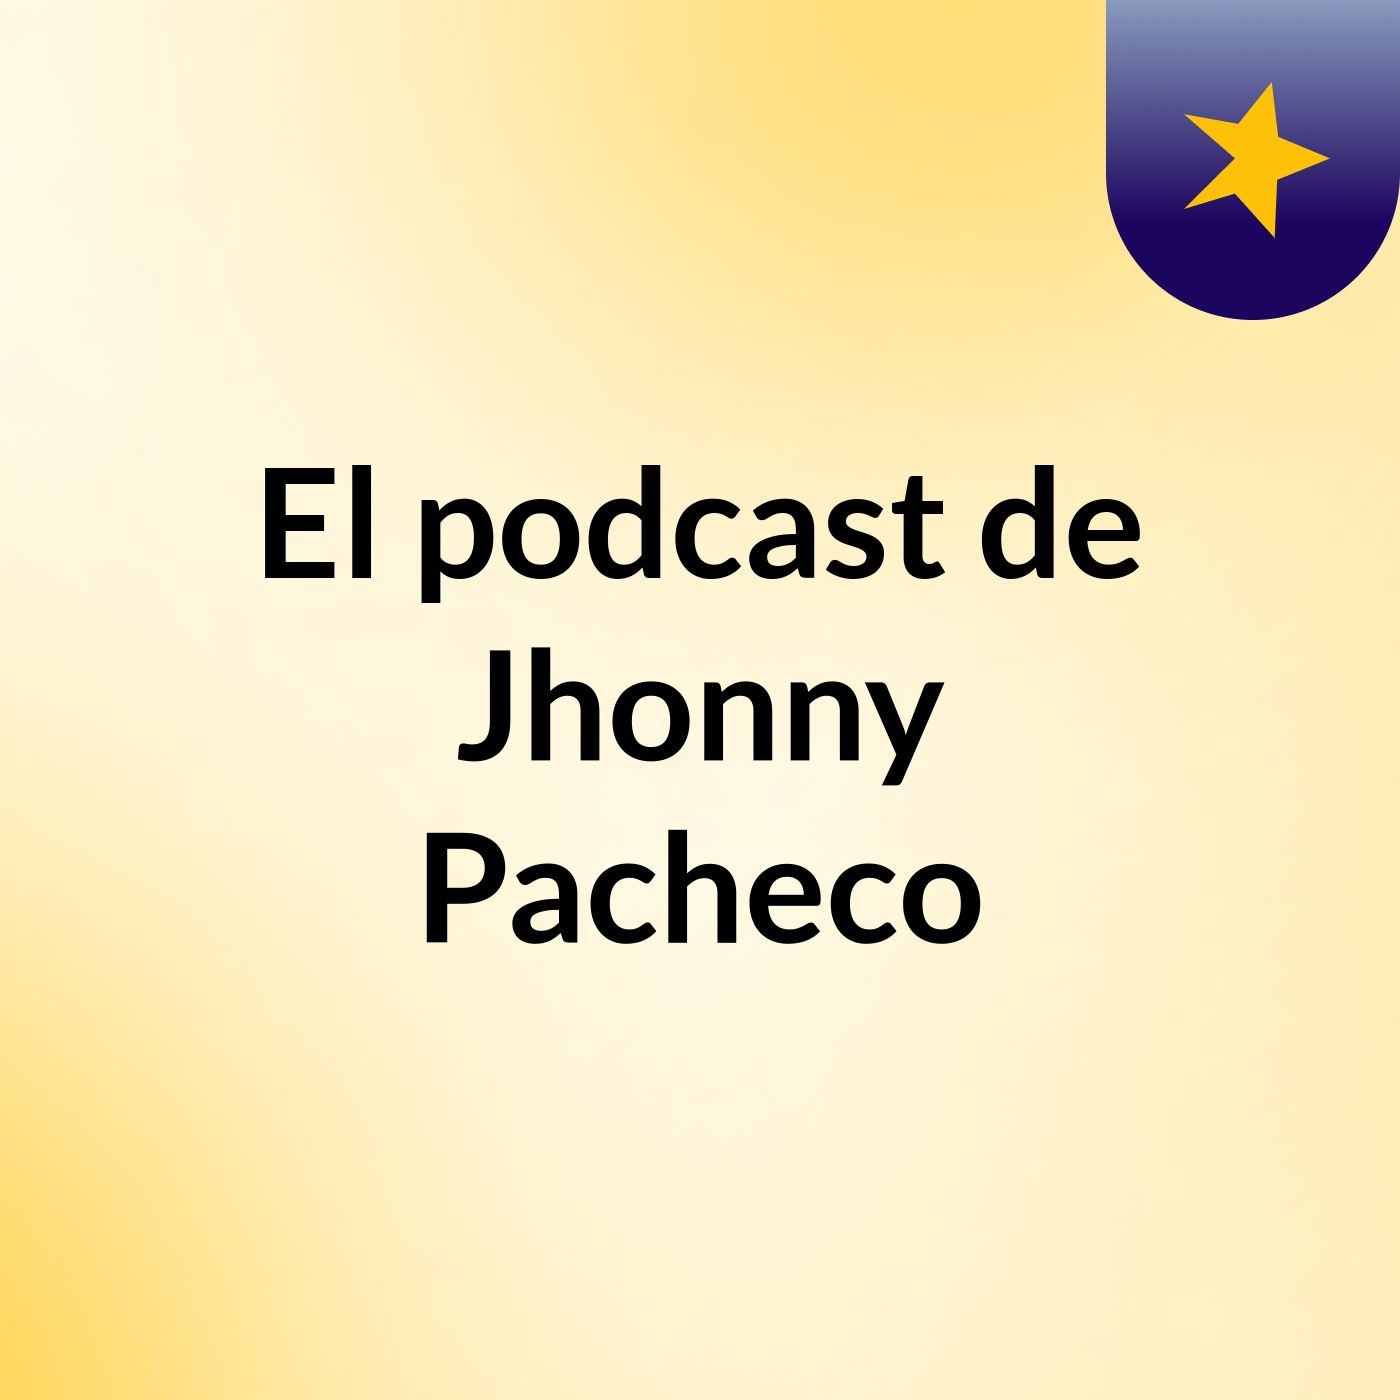 El podcast de Jhonny Pacheco